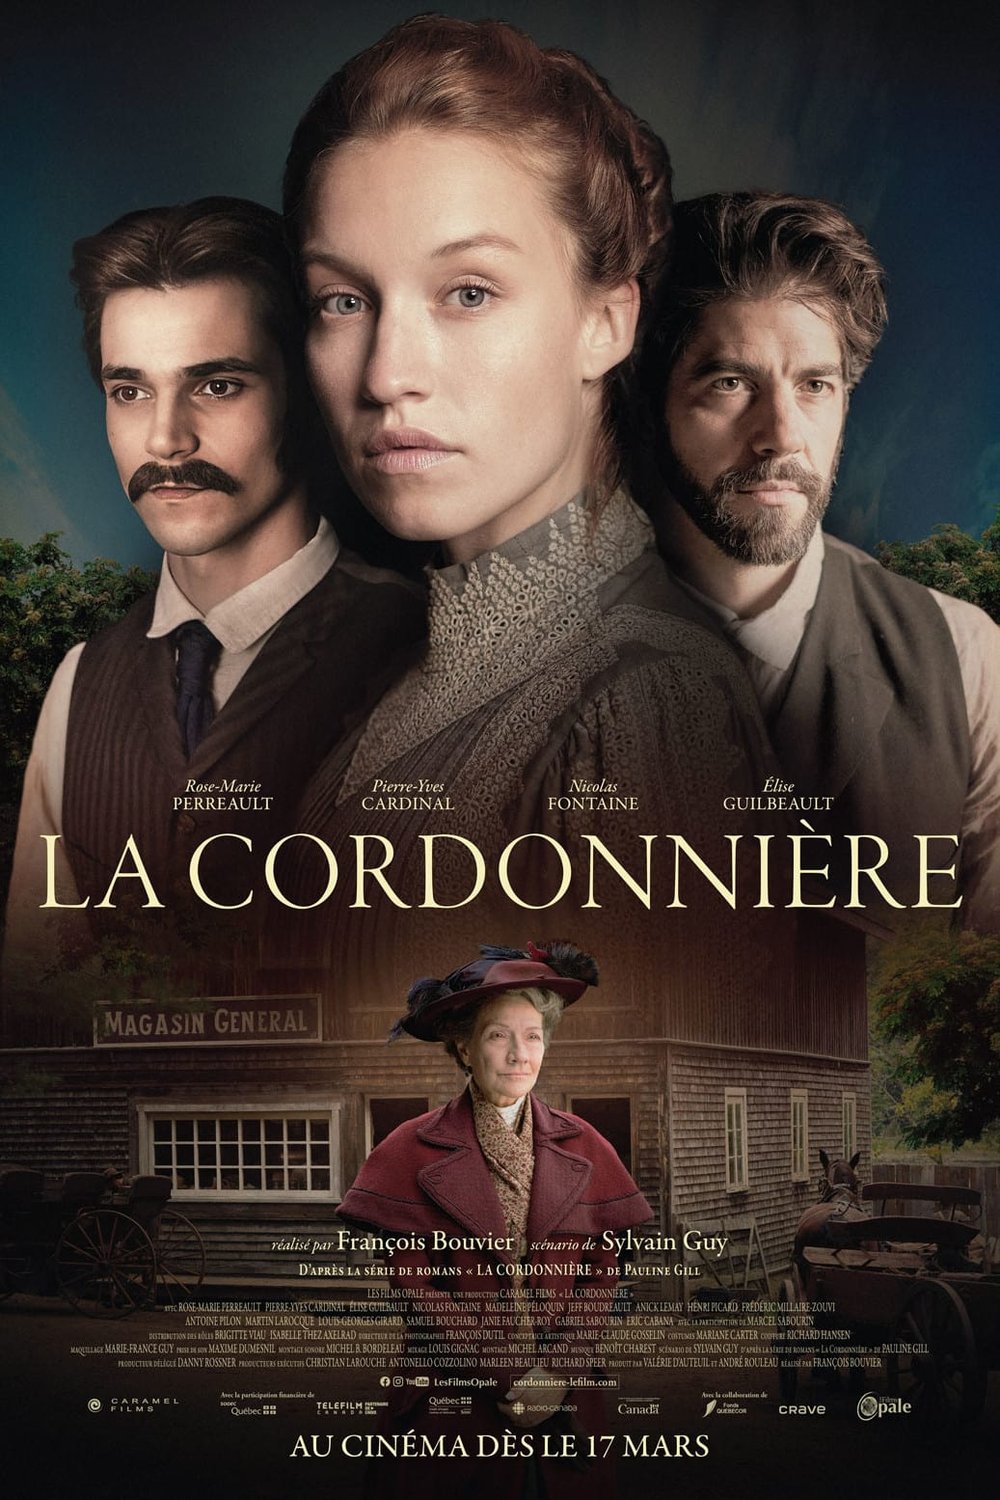 Poster of the movie La cordonnière